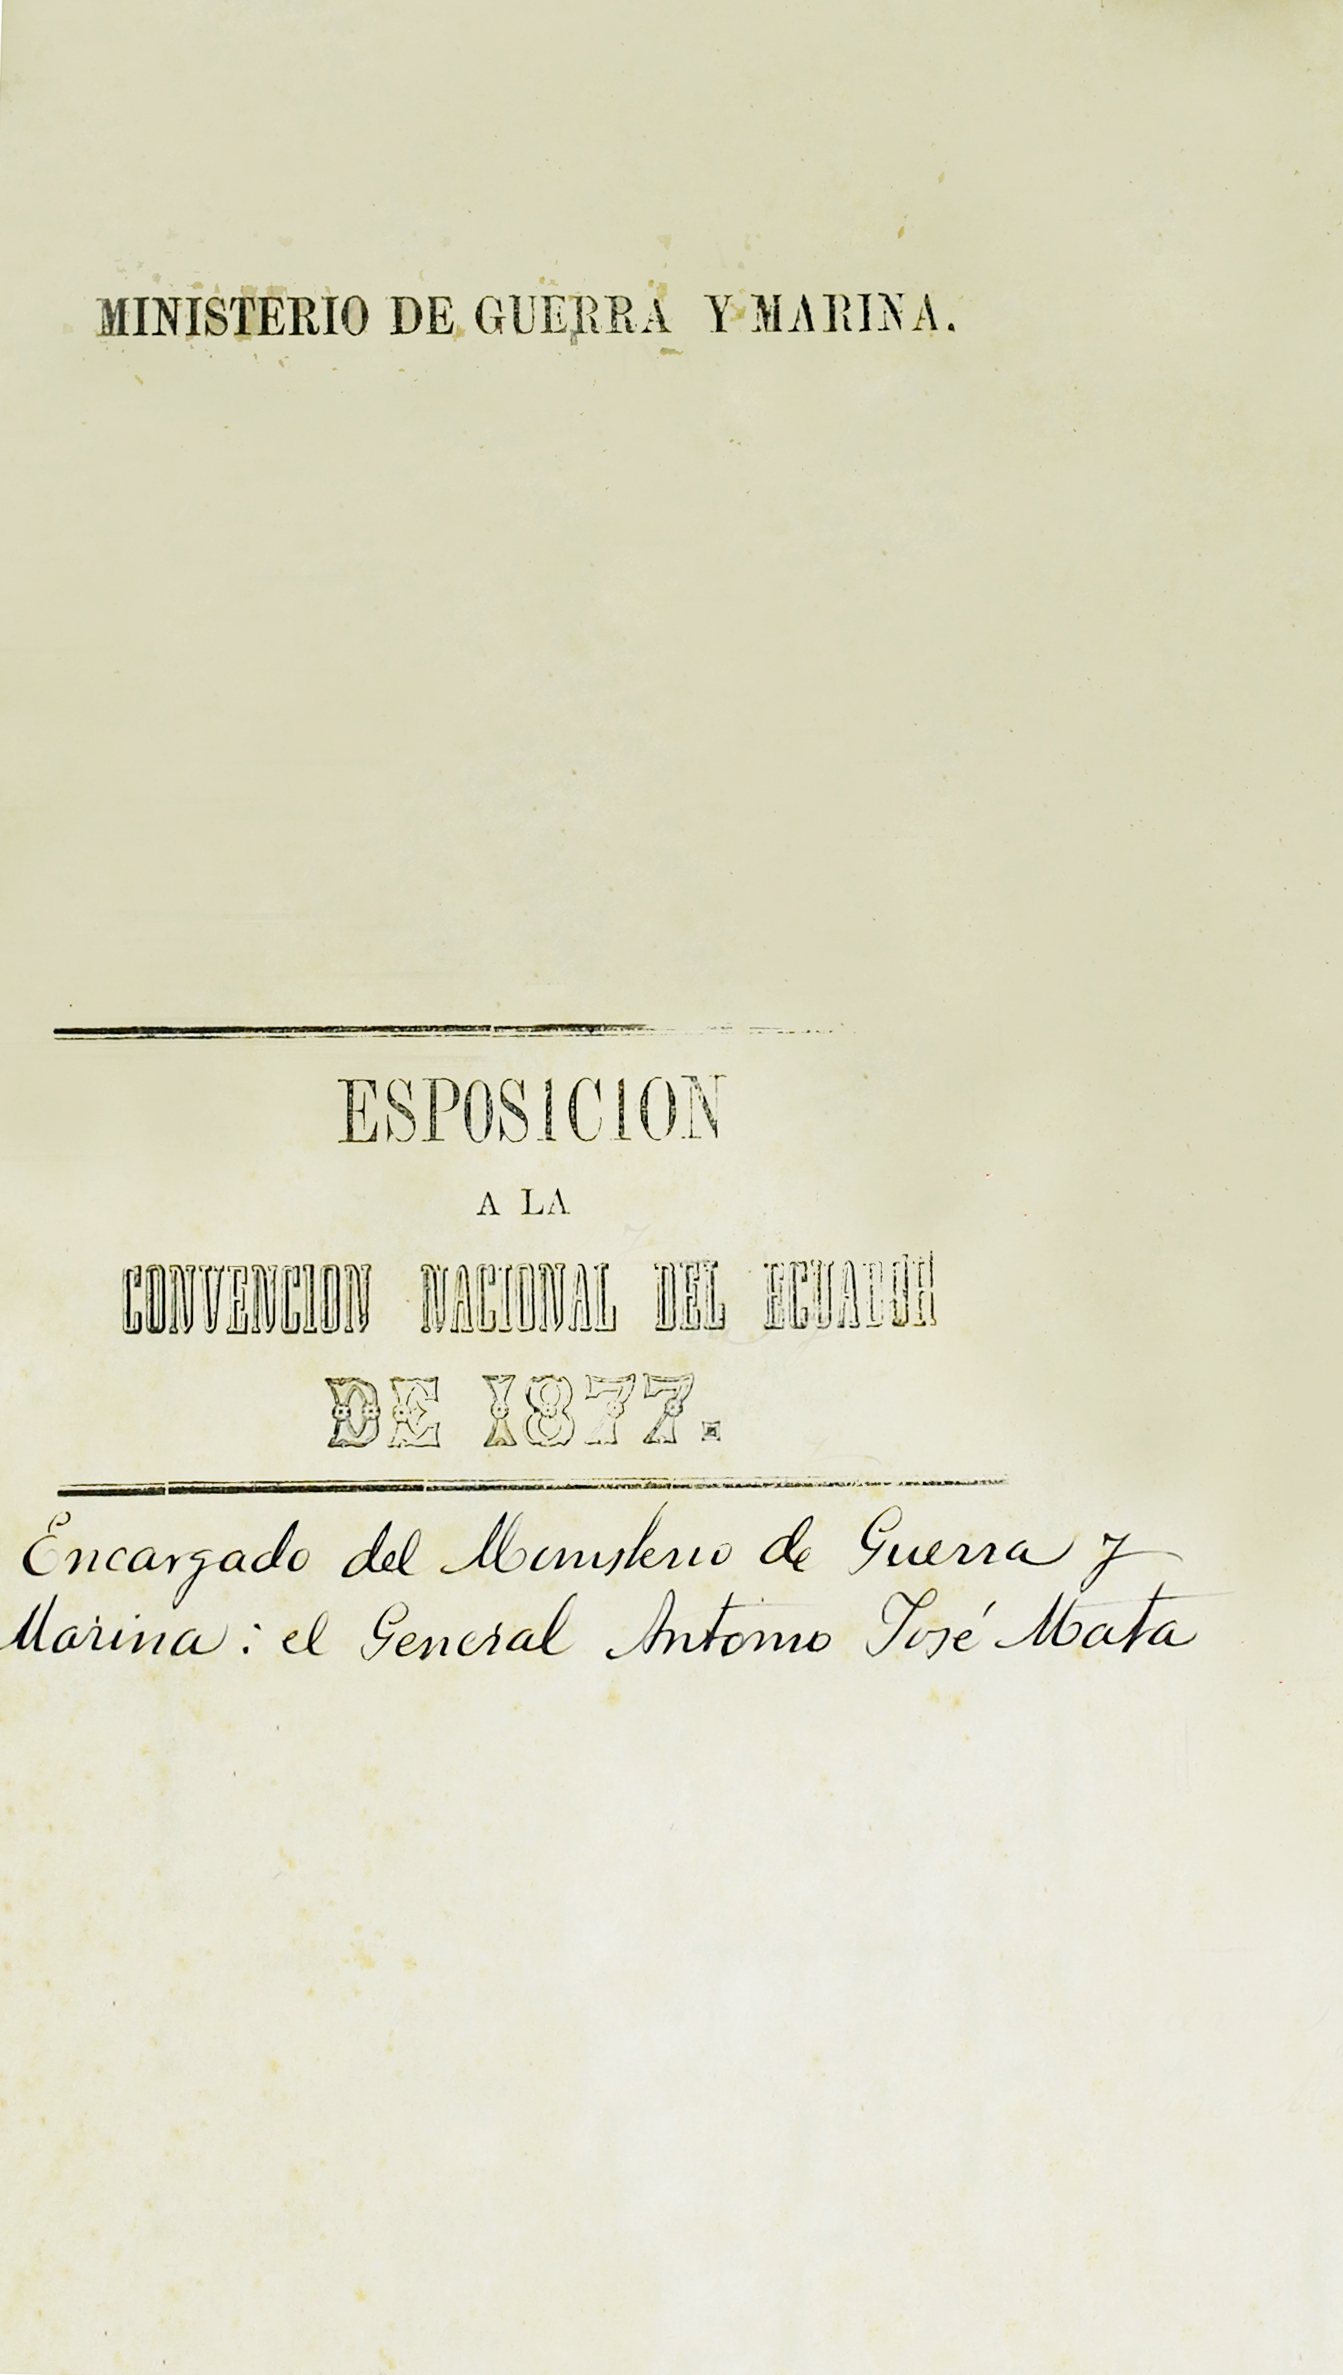 Esposición que dirige a la Convención Nacional del Ecuador el General encargado del Ministerio de Guerra y Marina en 1877